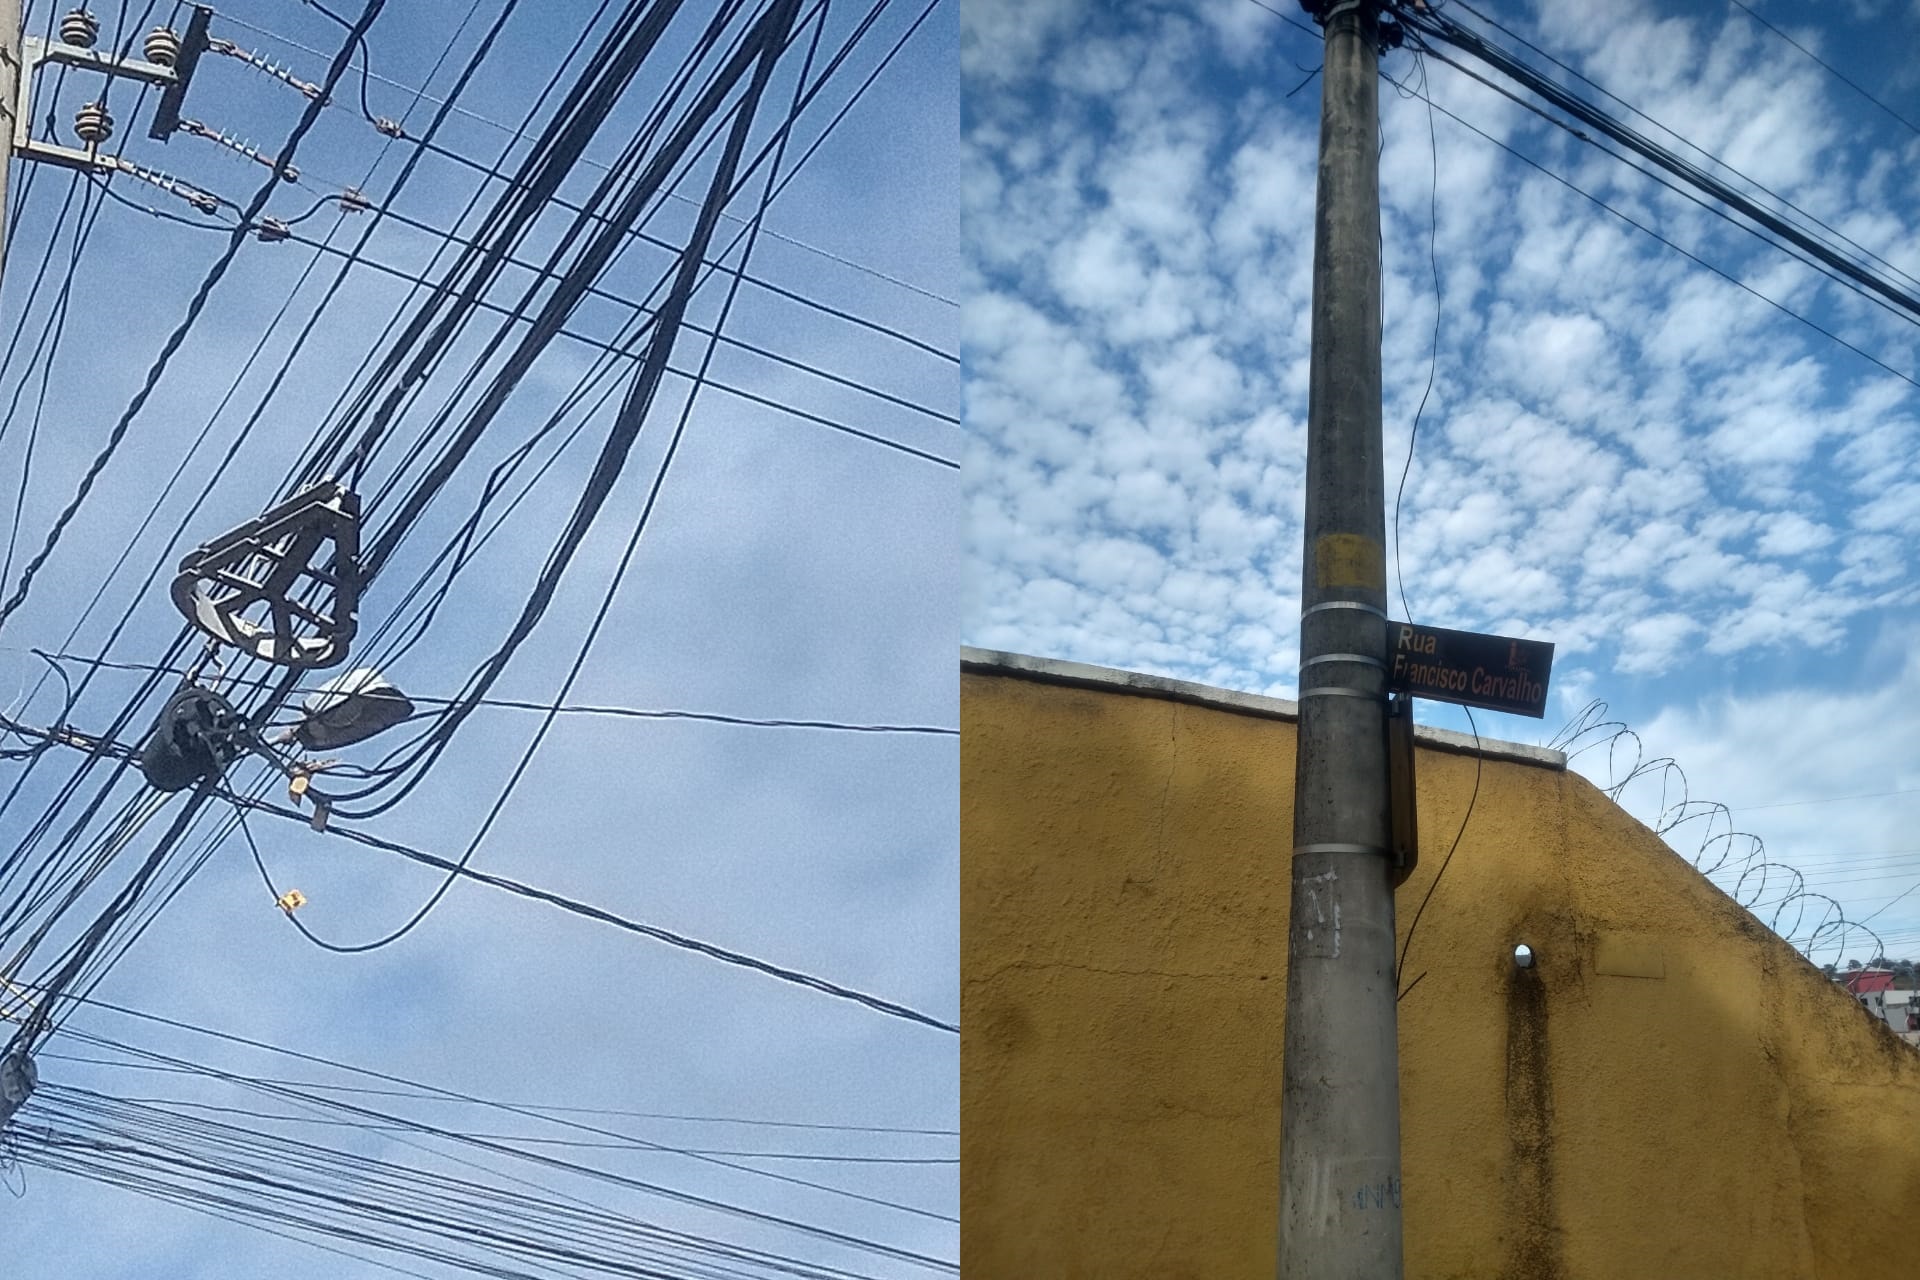 Empresas de internet, TV a cabo e telefonia tem um ano para organizar fiação em postes de Itaúna